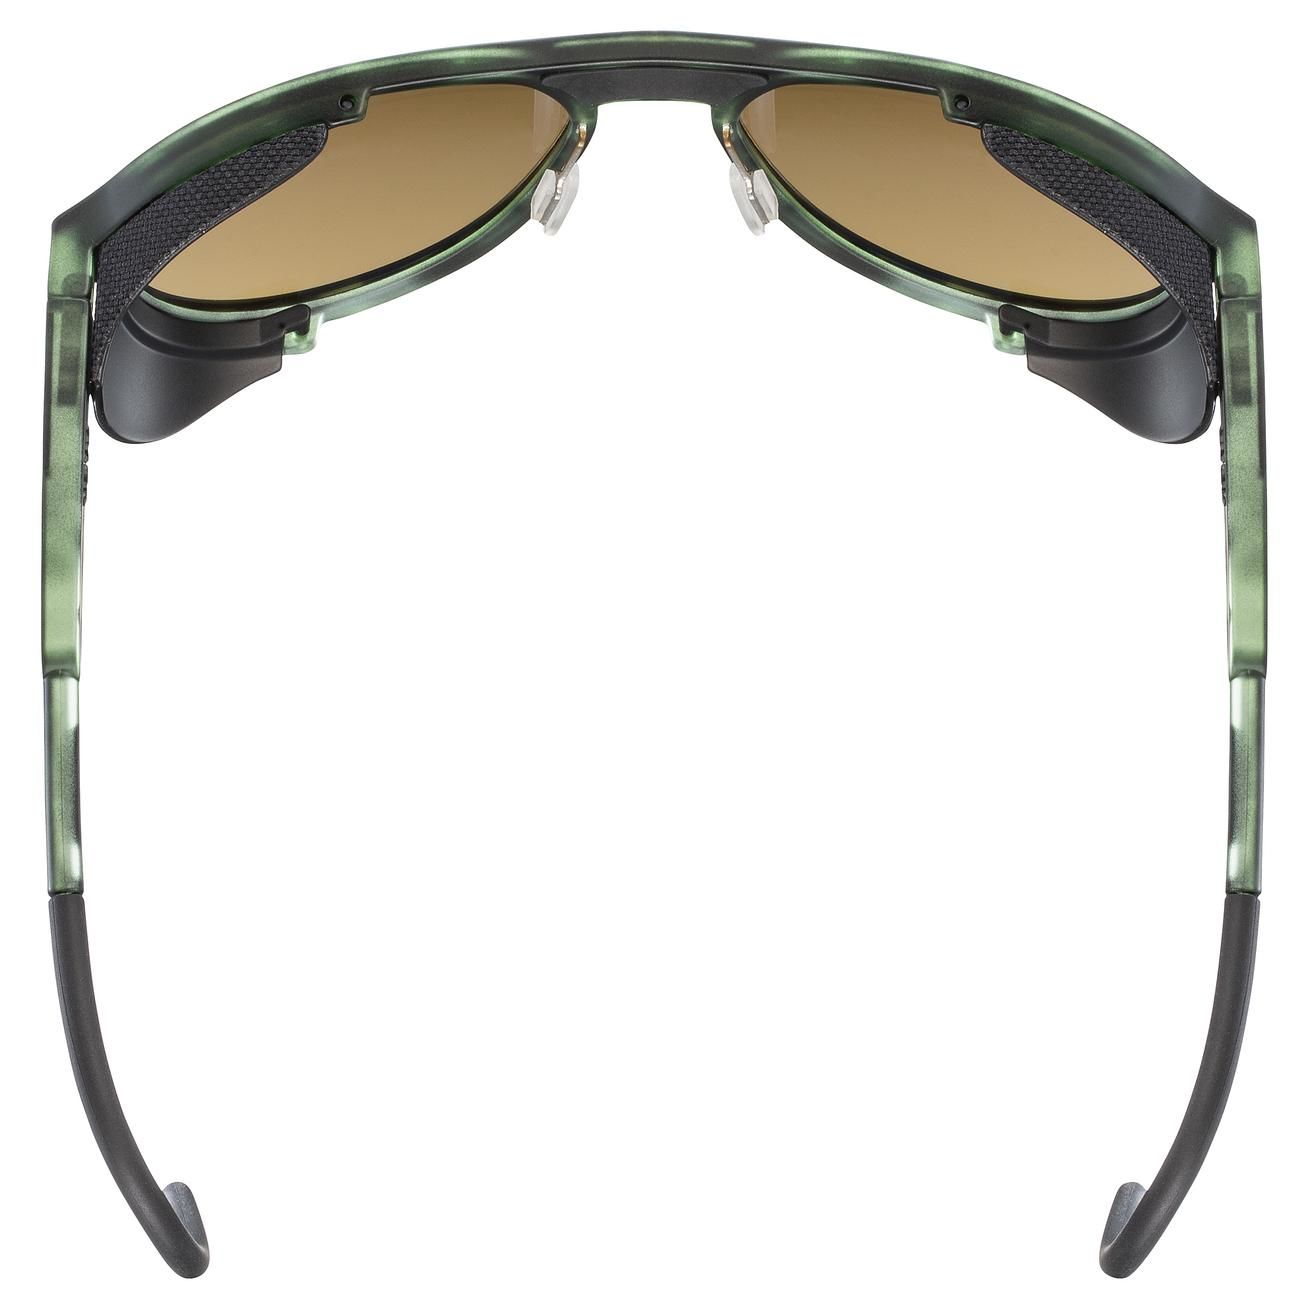 slnečné okuliare uvex mtn classic CV green mat totroise s3